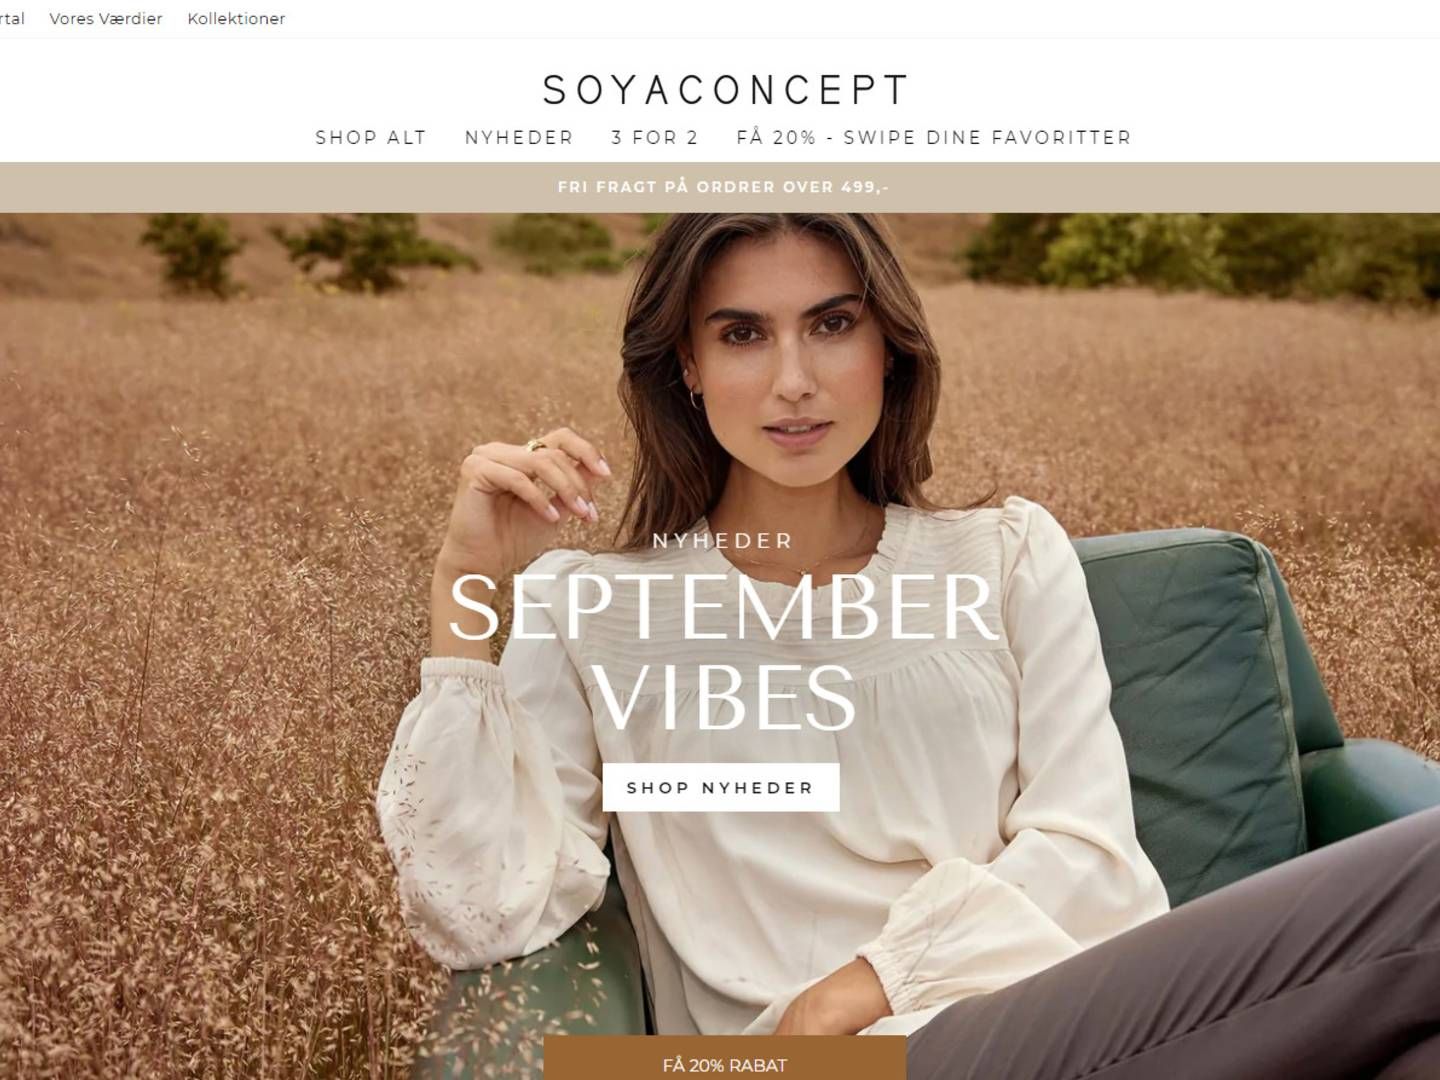 Ifølge Børsen har det danske modemærke Soya Concept måttet sige farvel til en milliardhandel af virksomheden. | Foto: Skærmbillede/Soya Concept